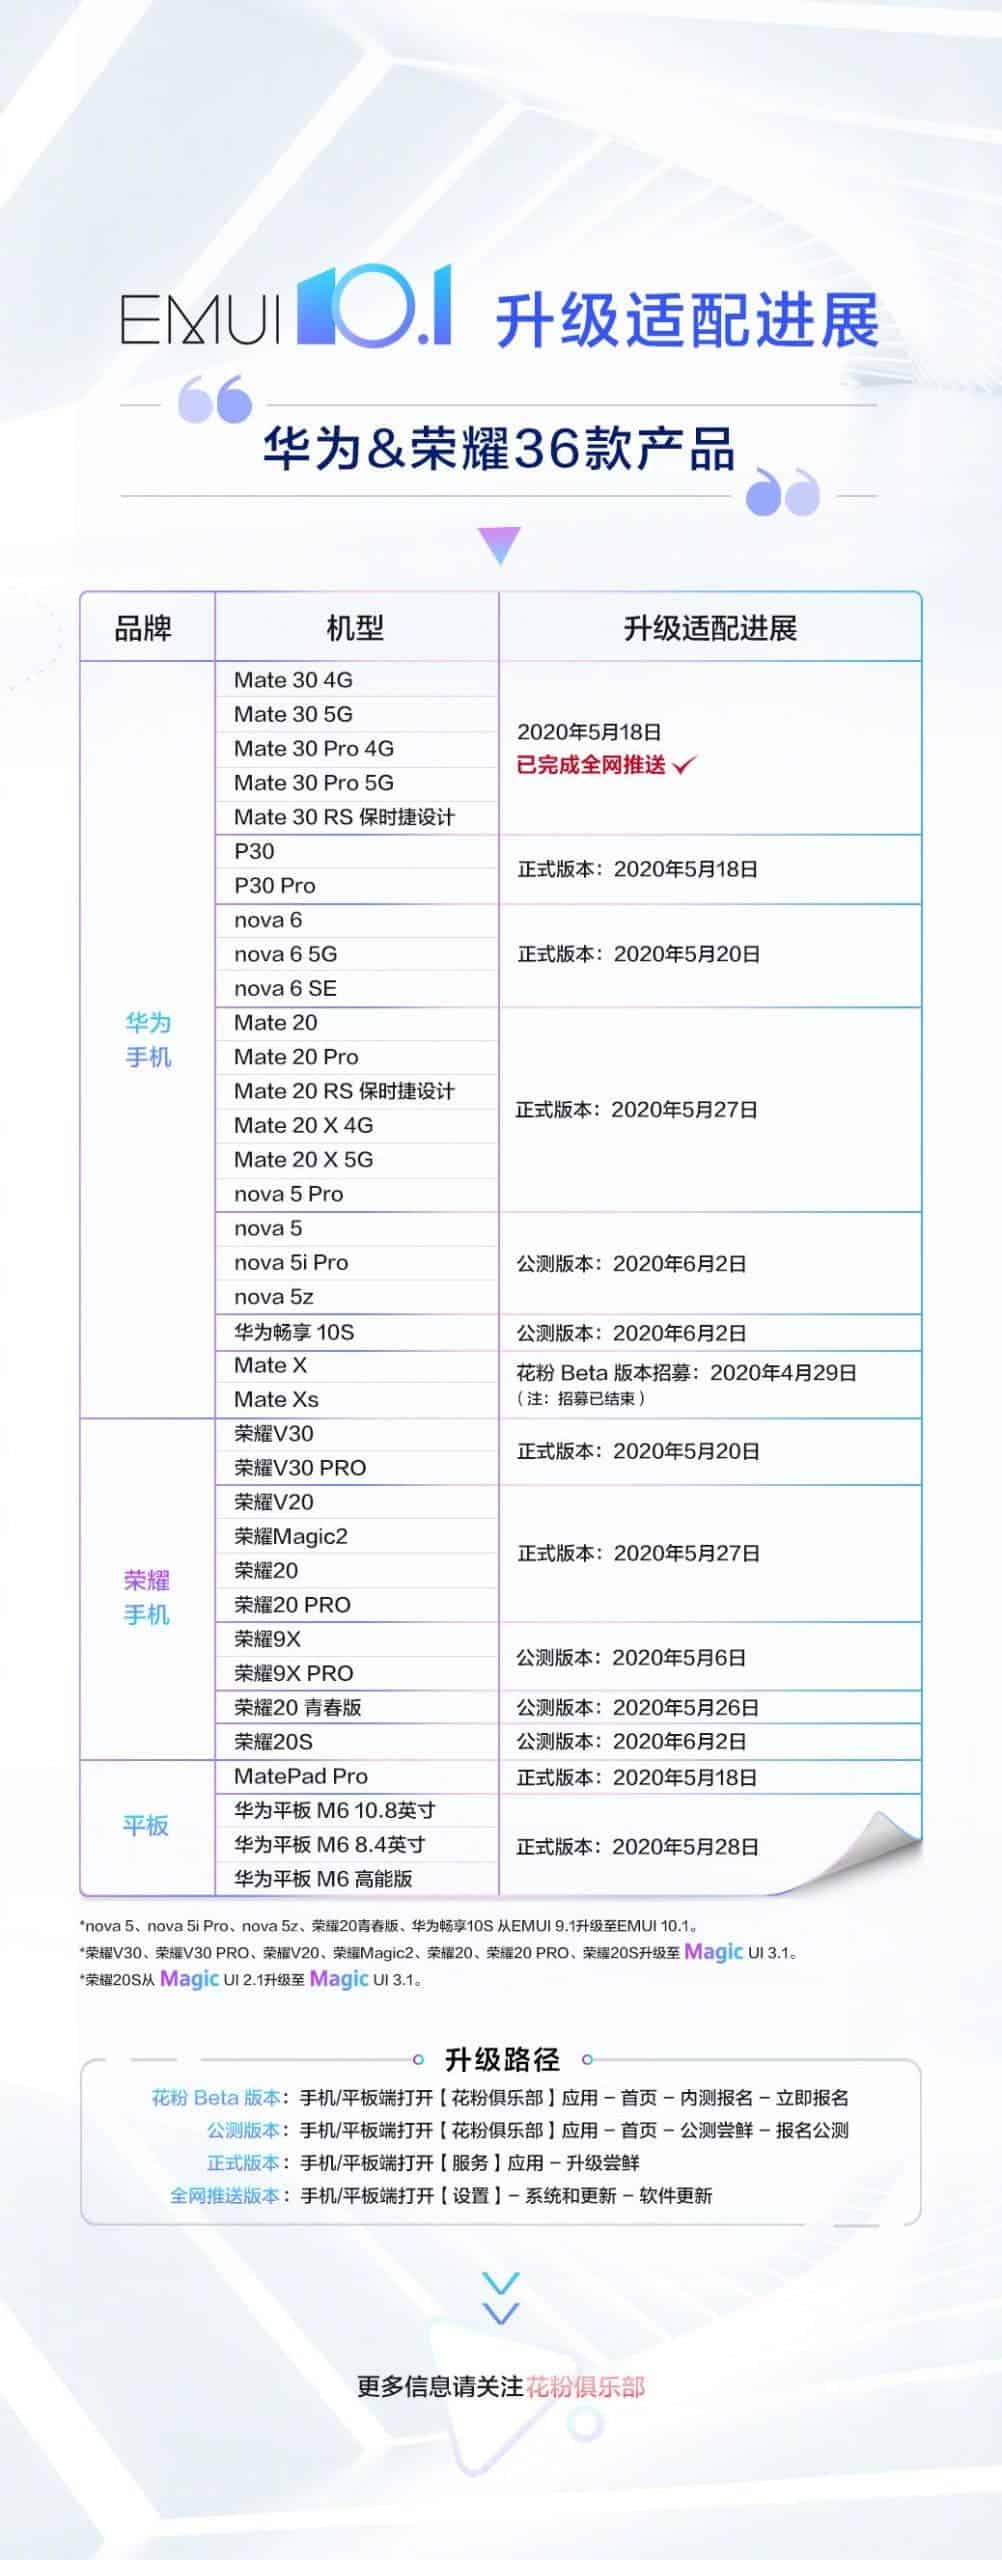 EMUI 10.1 güncellemesini alacak olan 36 adet Huawei ve Honor cihaz listesi